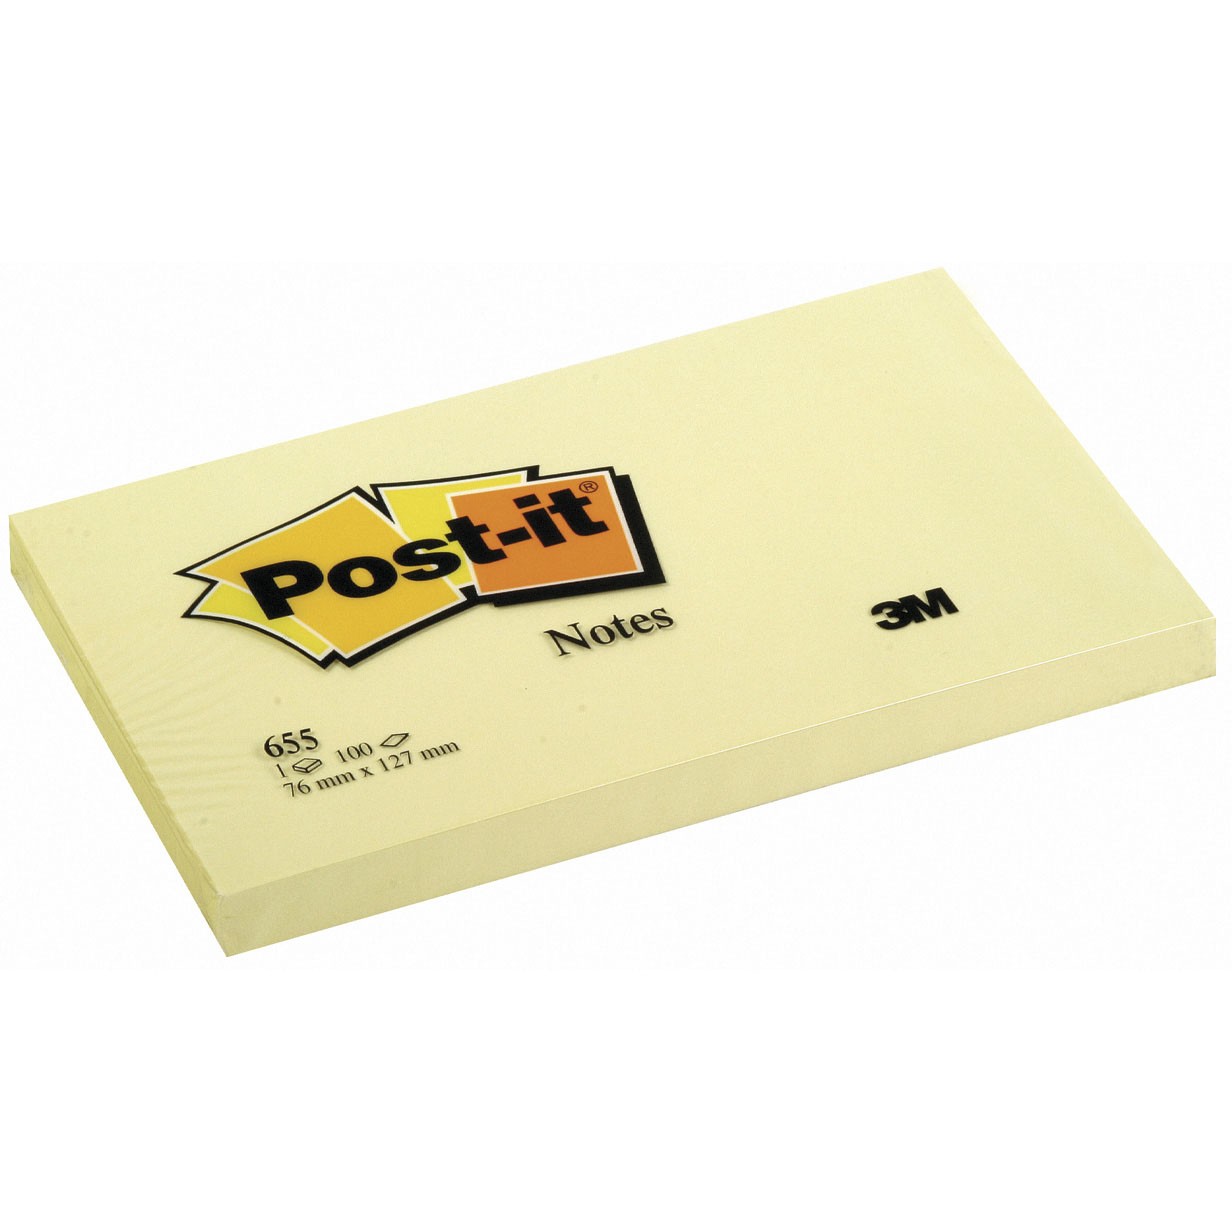 Post-it 3M 76 x 127 mm blok i gul